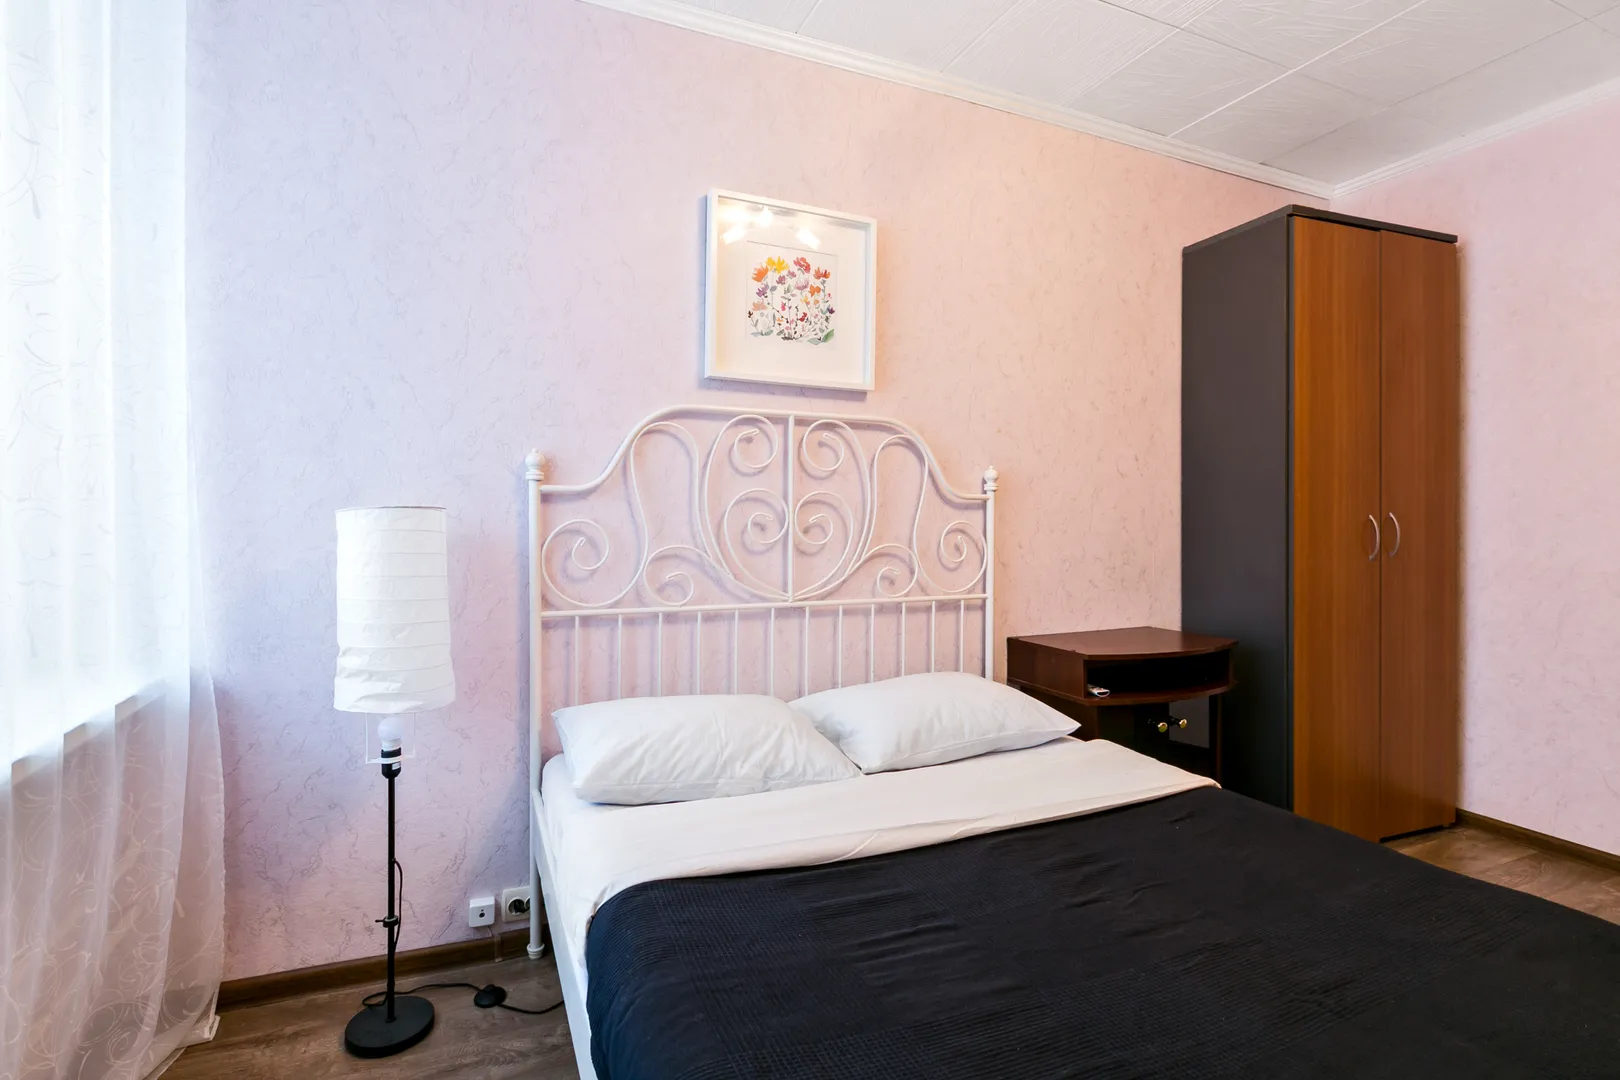 Спальня: крепкая железная кровать с чистым матрасом и застеленным бельем, ЖК-телевизор, плотные шторы и мягкий ковер.